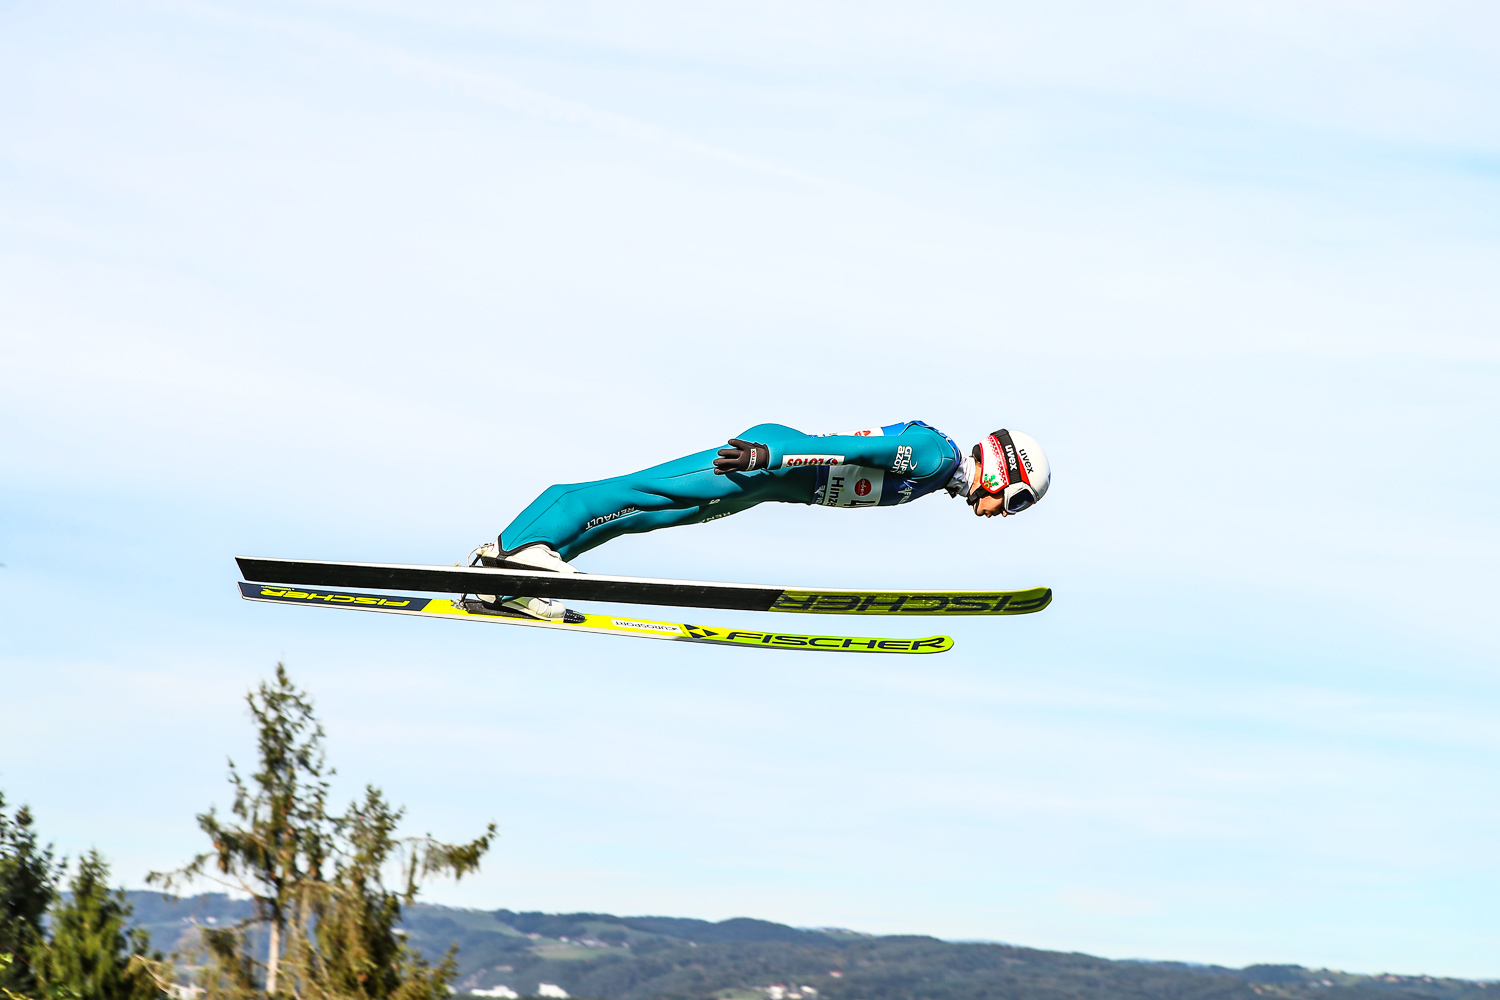 Skoki narciarskie Kamil Stoch Mam wyzwanie do końca kariery nie mogę zakończyć w takim stylu